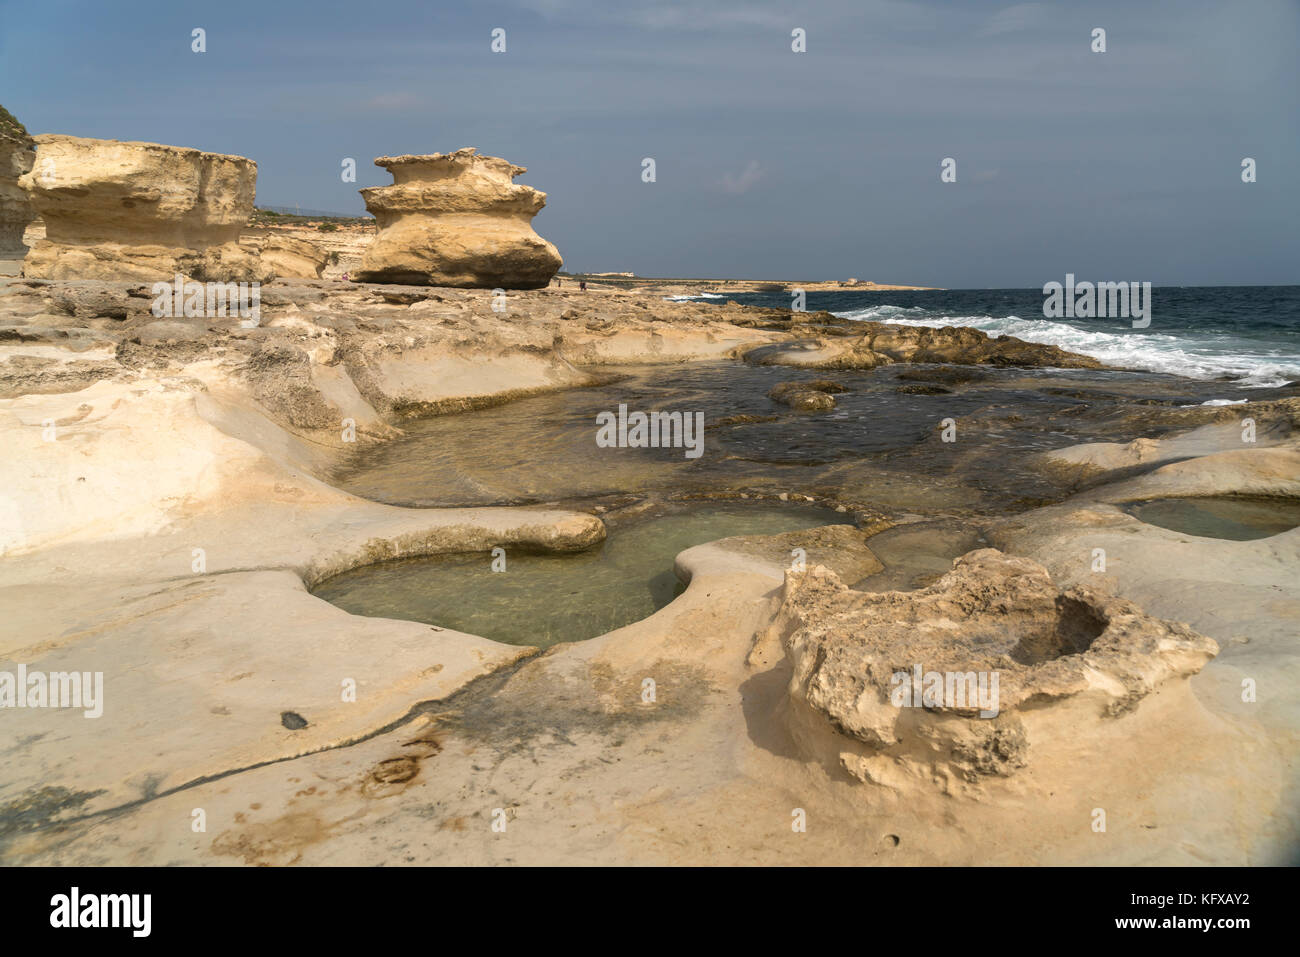 Felsige küste mit salzpfannen bei st. Peter's Pool auf der delimara halbinsel nahe marsaxlokk, malta | costa rocciosa con saline accanto a san pietro Foto Stock